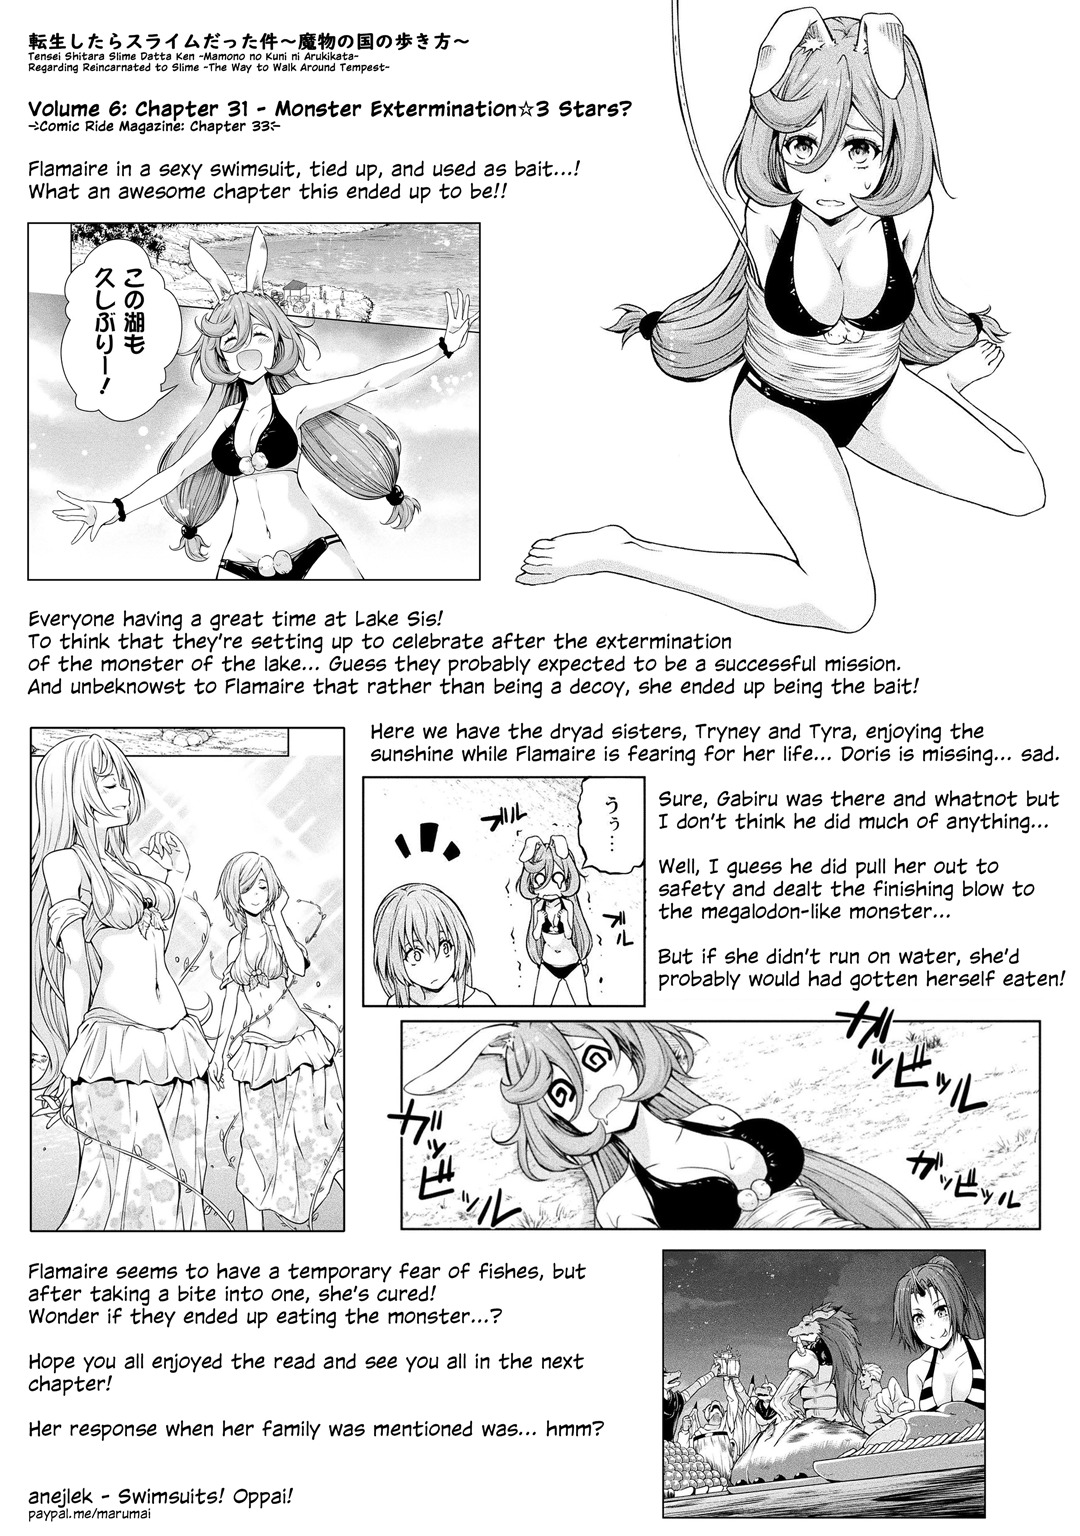 Tensei Shitara Slime Datta Ken: Mabutsu no Kuni no Arukikata vol.6 ch.32